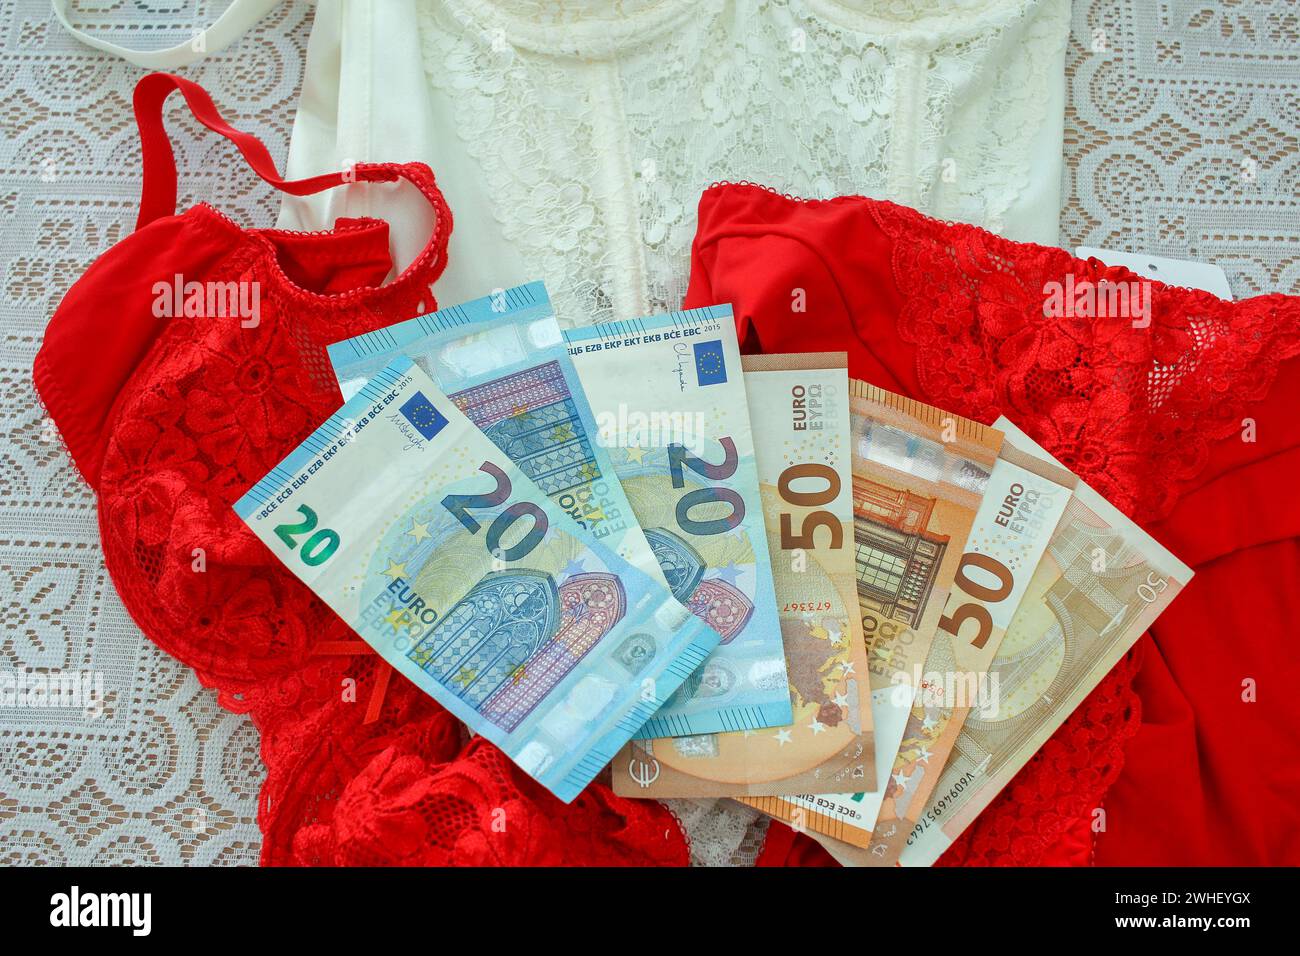 A significare spese per San Valentino, una composizione presenta lingerie rosse abbinate a euro, che riflettono l'investimento finanziario in gestur romantico Foto Stock